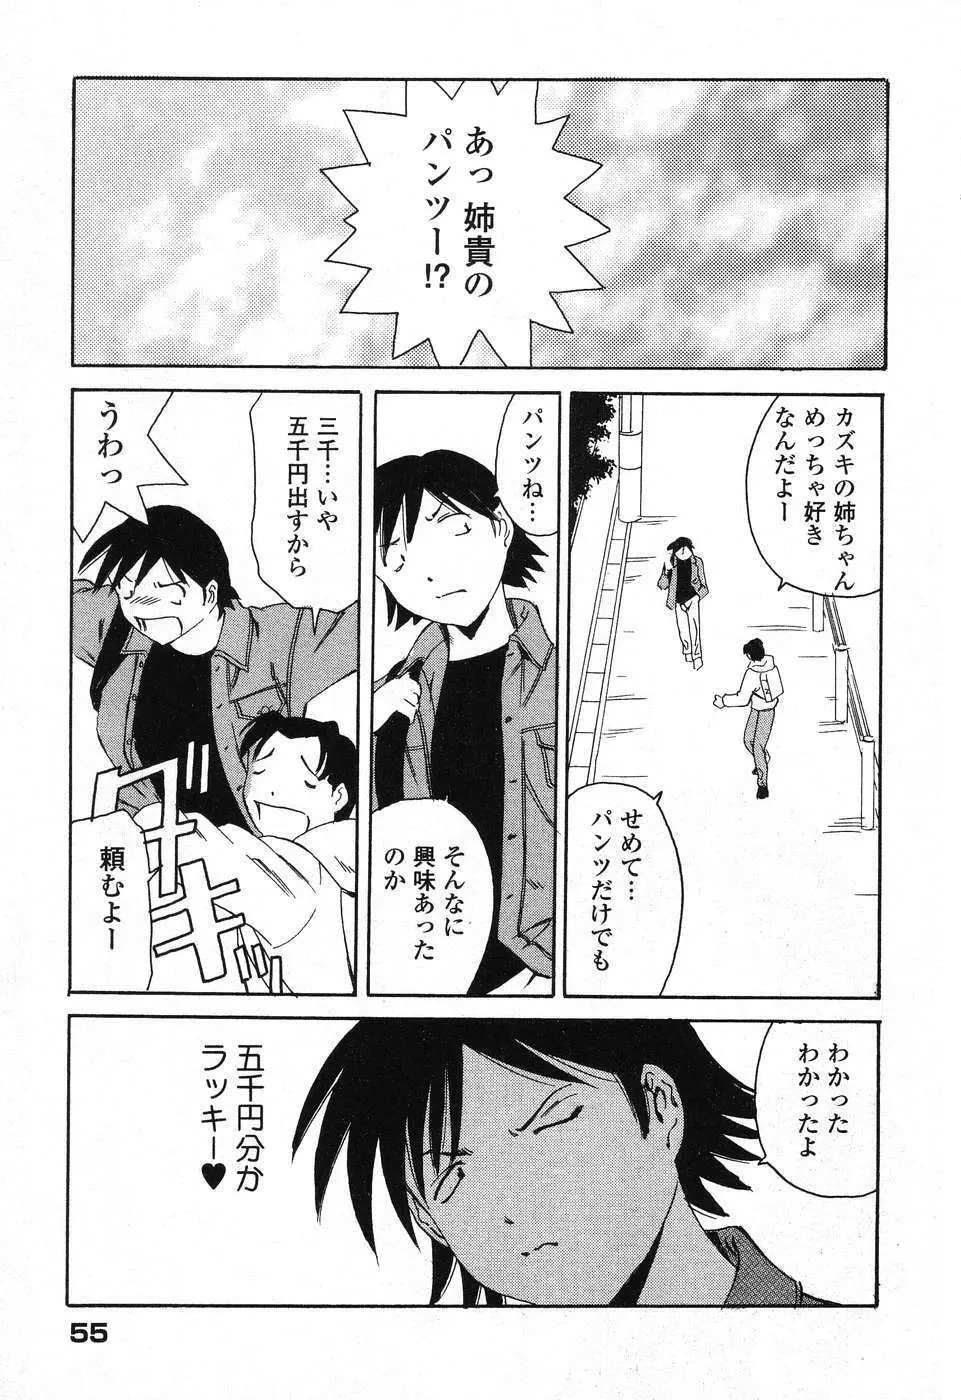 ぴゅあぷちっと Vol. 25 56ページ